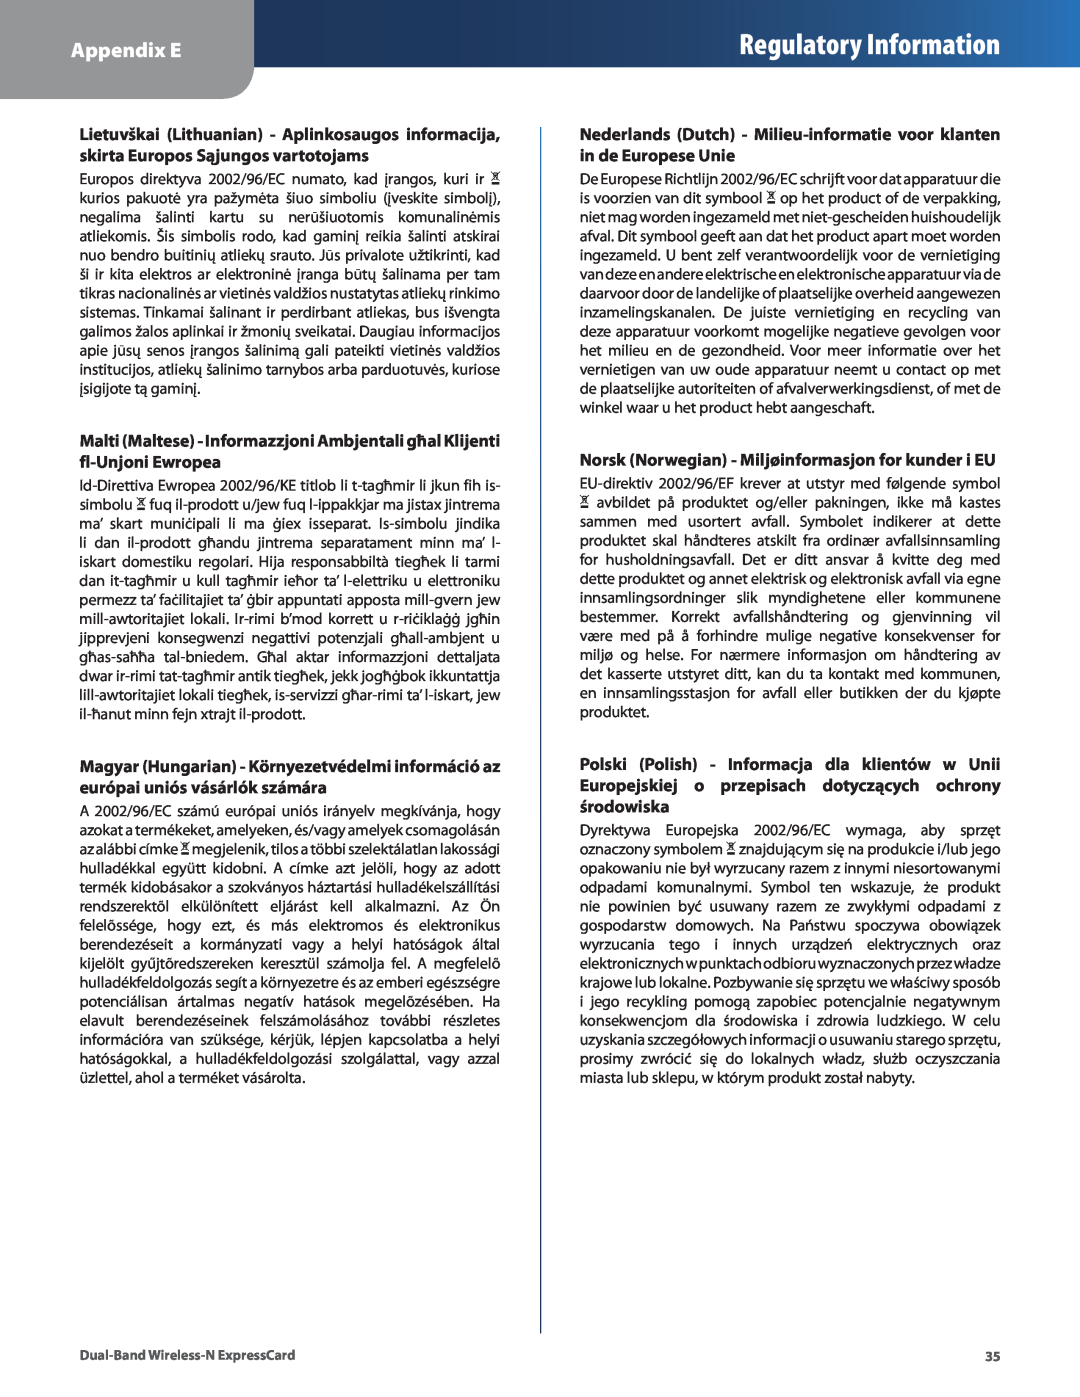 Cisco Systems WEC600N manual Nederlands Dutch - Milieu-informatie voor klanten in de Europese Unie, Regulatory Information 